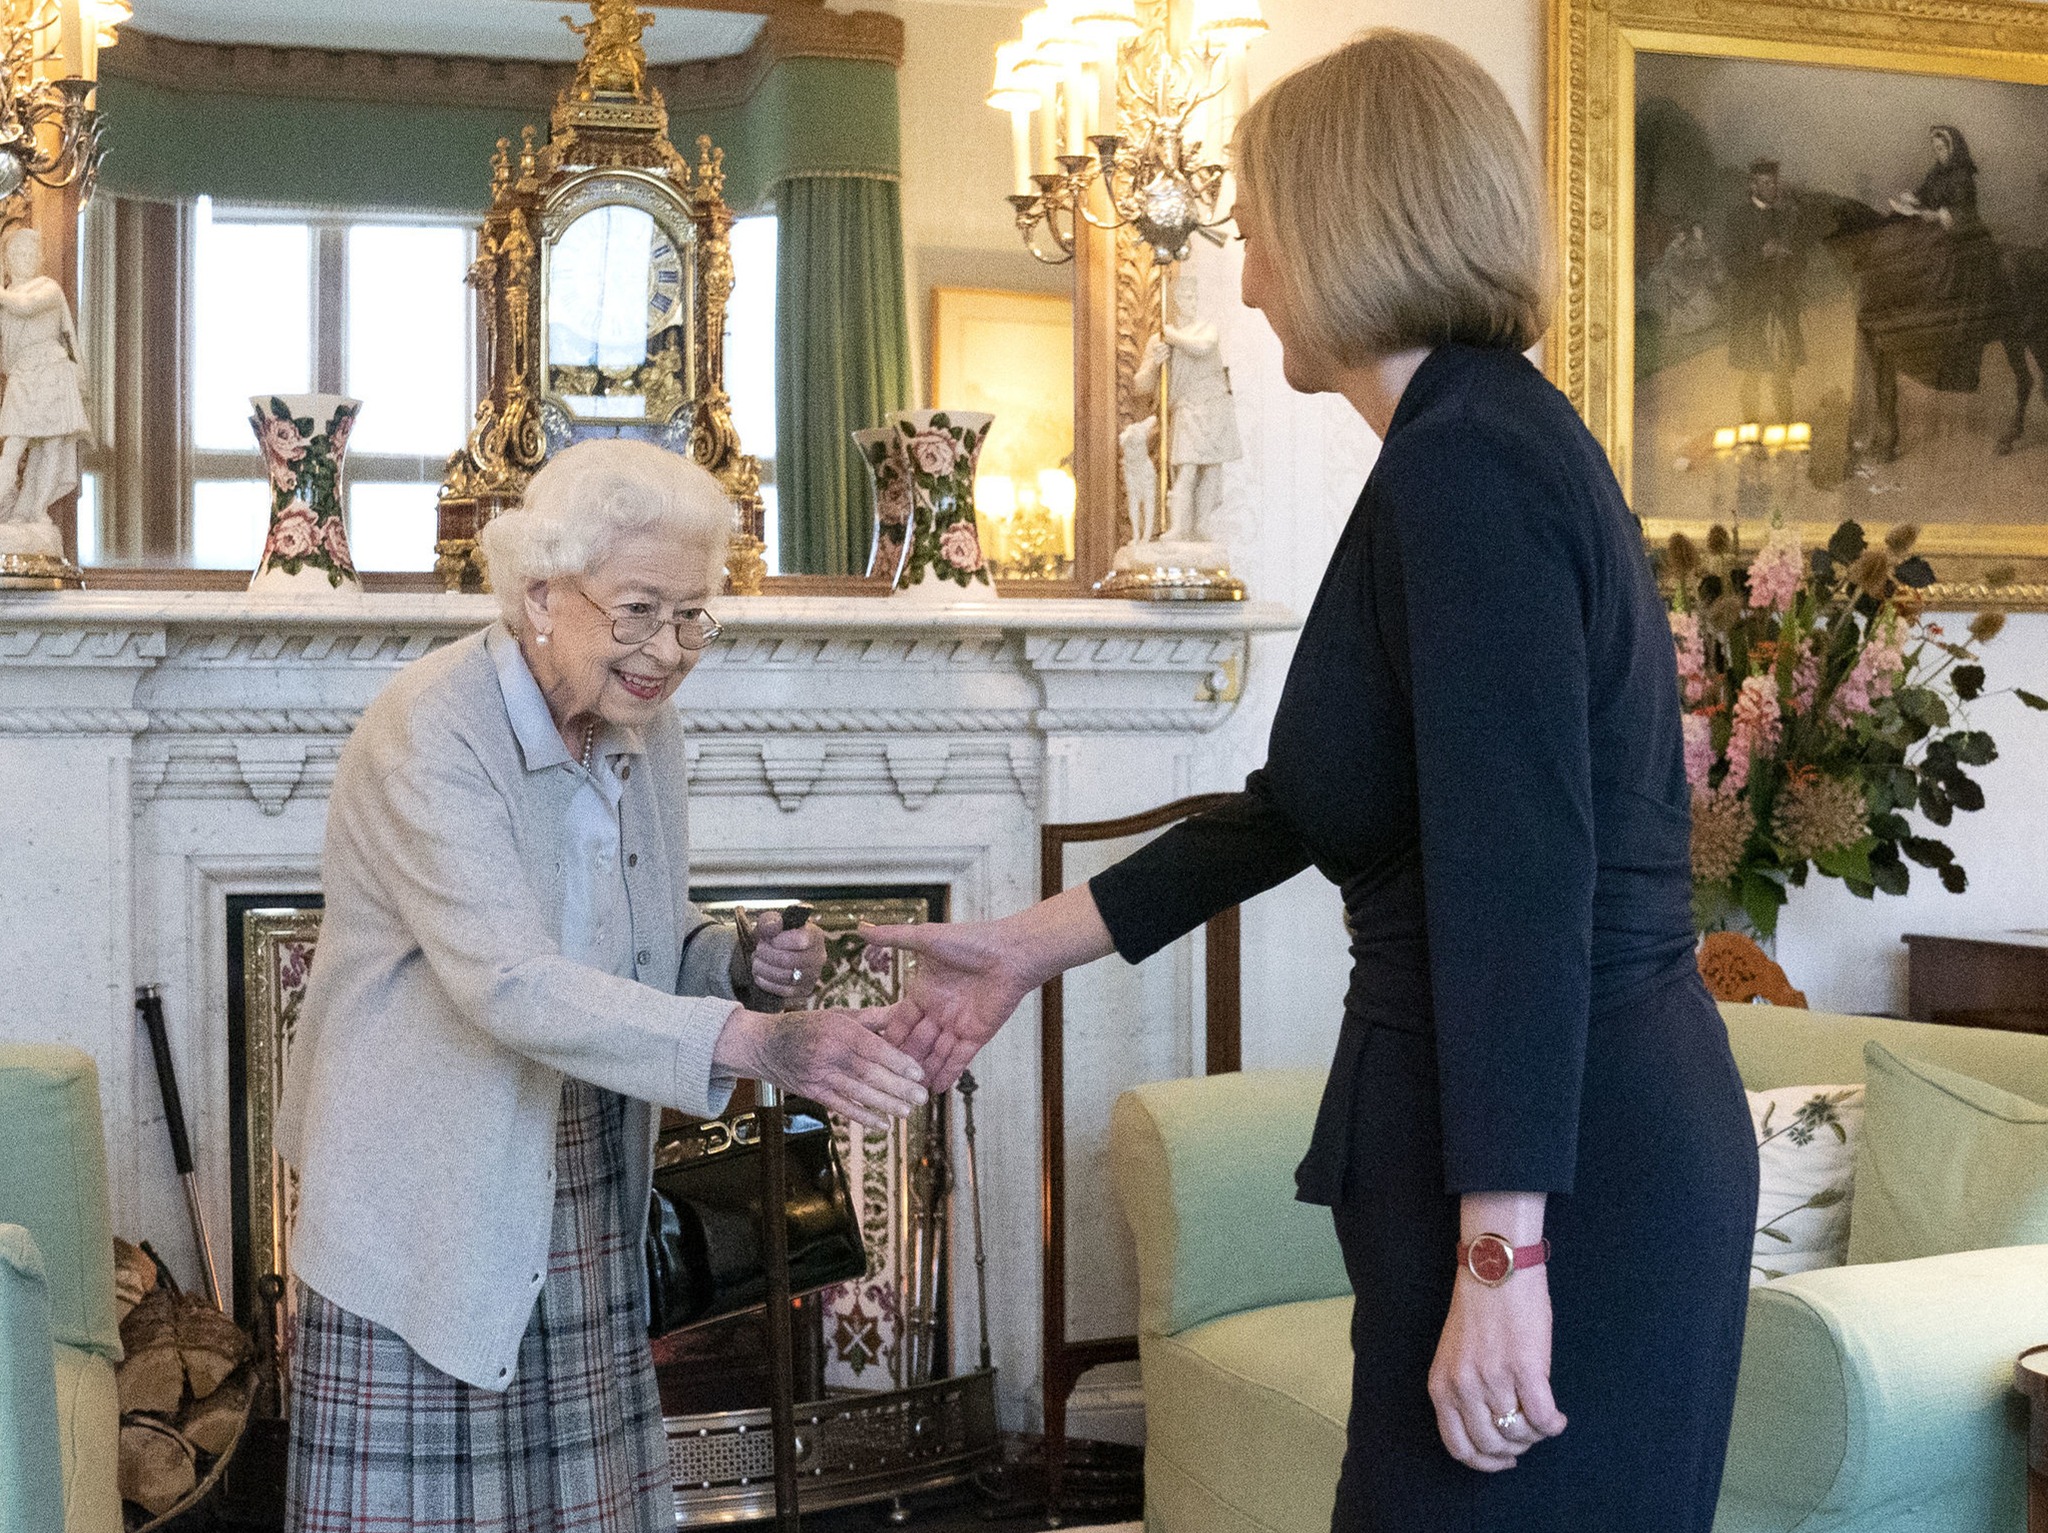 Ultima apariție publică a Reginei Elisabeta a II-a a avut loc marți, 6 septembrie, când a numit-o premier al Marii Britanii pe Liz Truss (Foto: Facebook - The Royal Family)